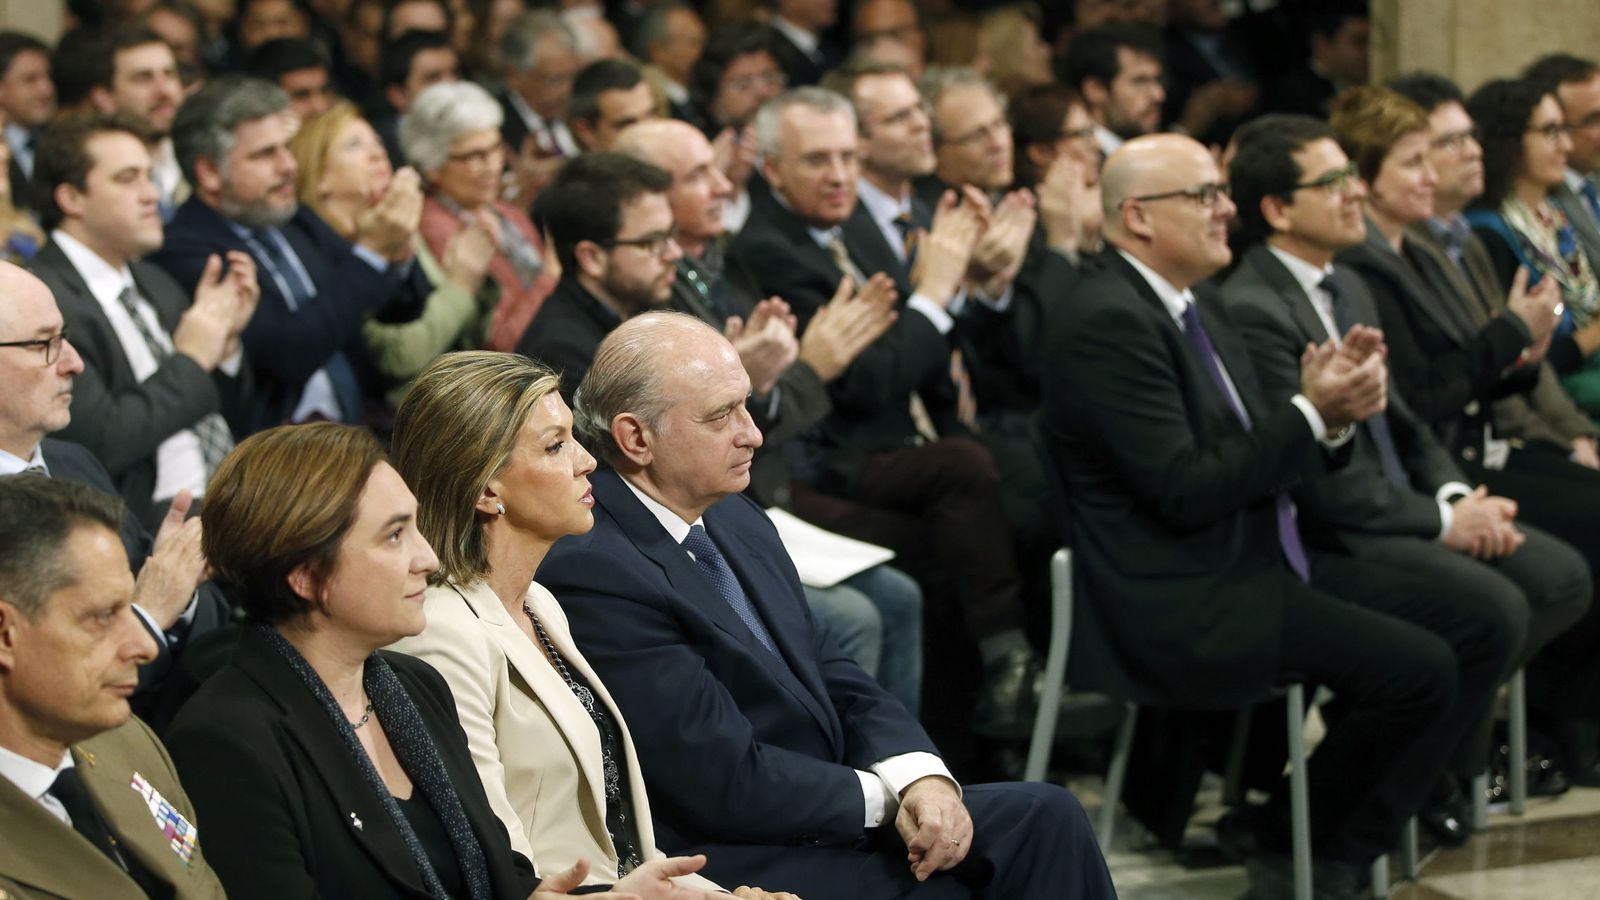 Foto: El nuevo presidente catalán recibe los aplausos de los invitados durante el acto de toma de posesión. (EFE)